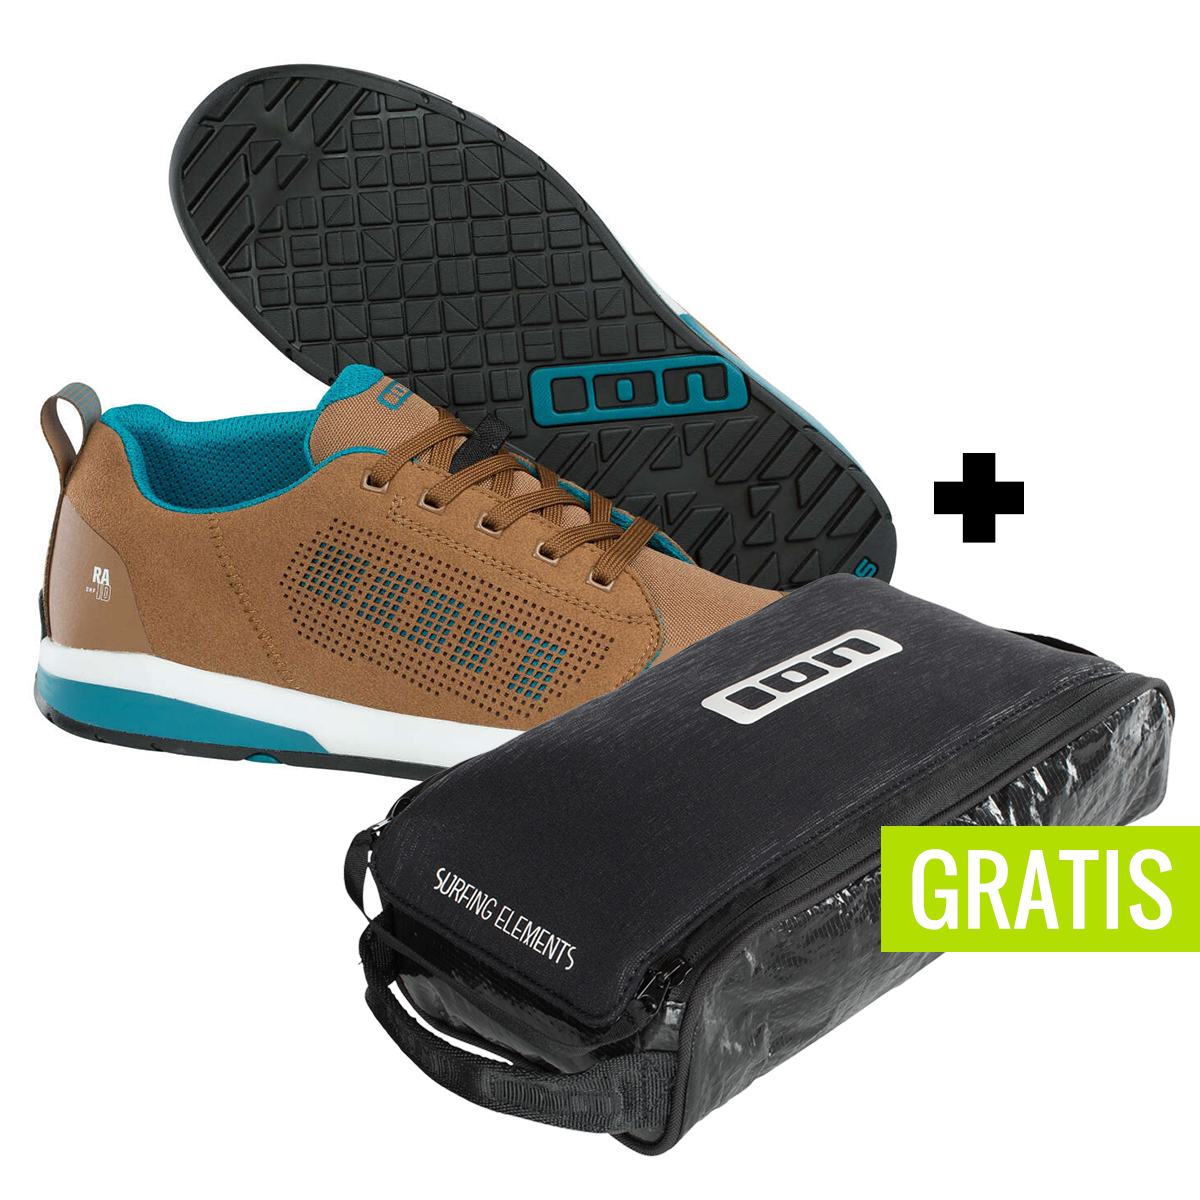 ION Chaussures VTT Raid_Amp Single Malt + free shoe bag